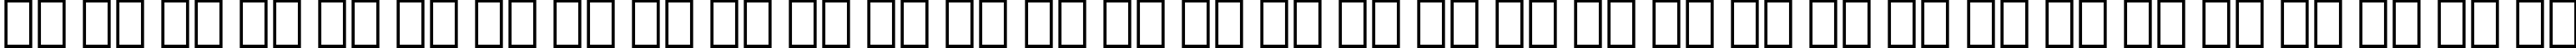 Пример написания русского алфавита шрифтом Schadow Black Condensed BT